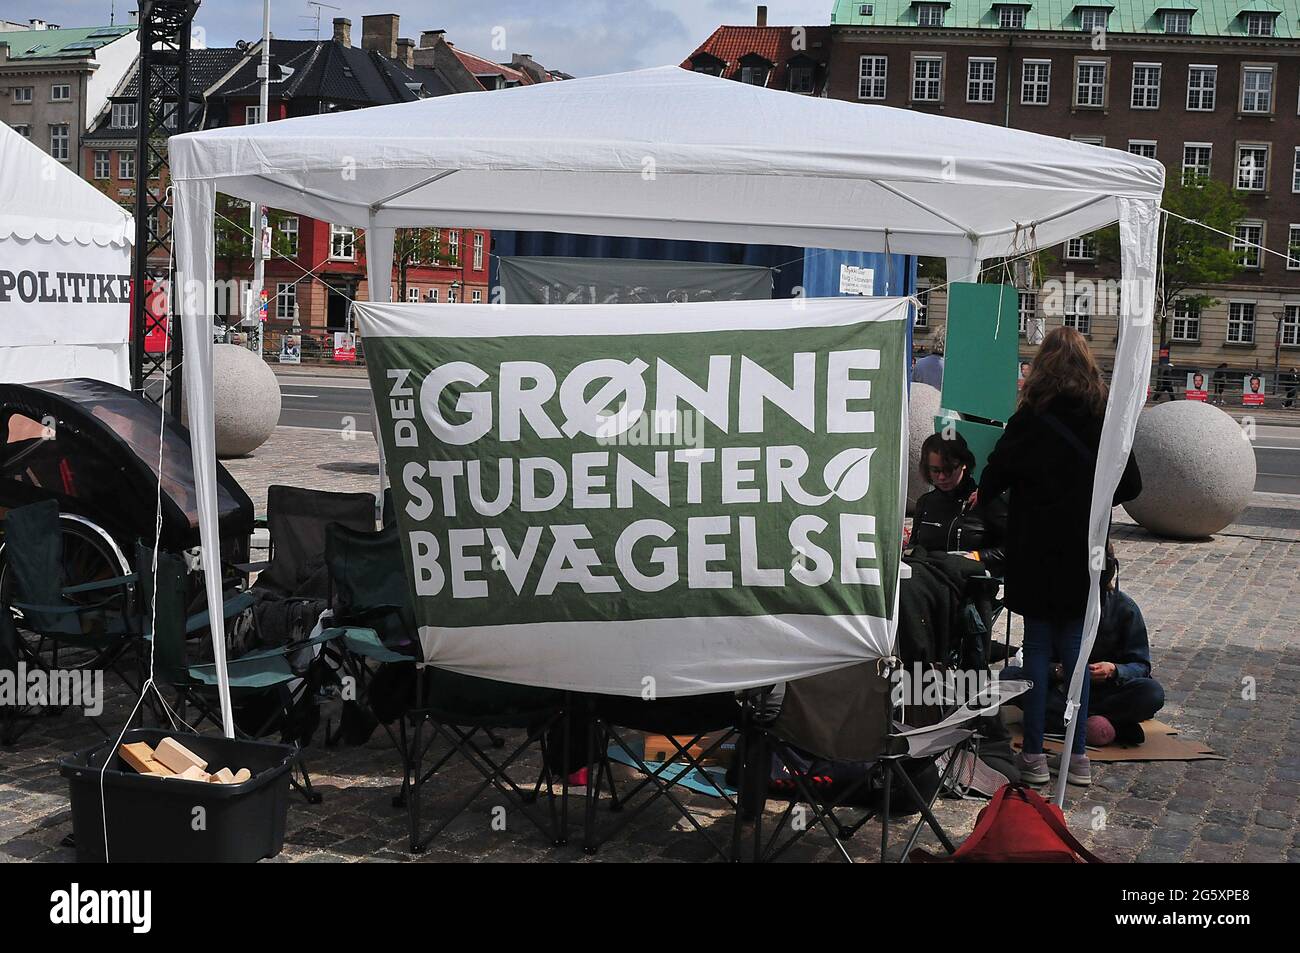 Kopenhagen /Dänemark./ 28. MAI 2019/ einige dänische Kinder gehen heute nicht in die Schule, sondern sie gehen gegen das dänische parlament, um gegen Aginas zu protestieren Stockfoto